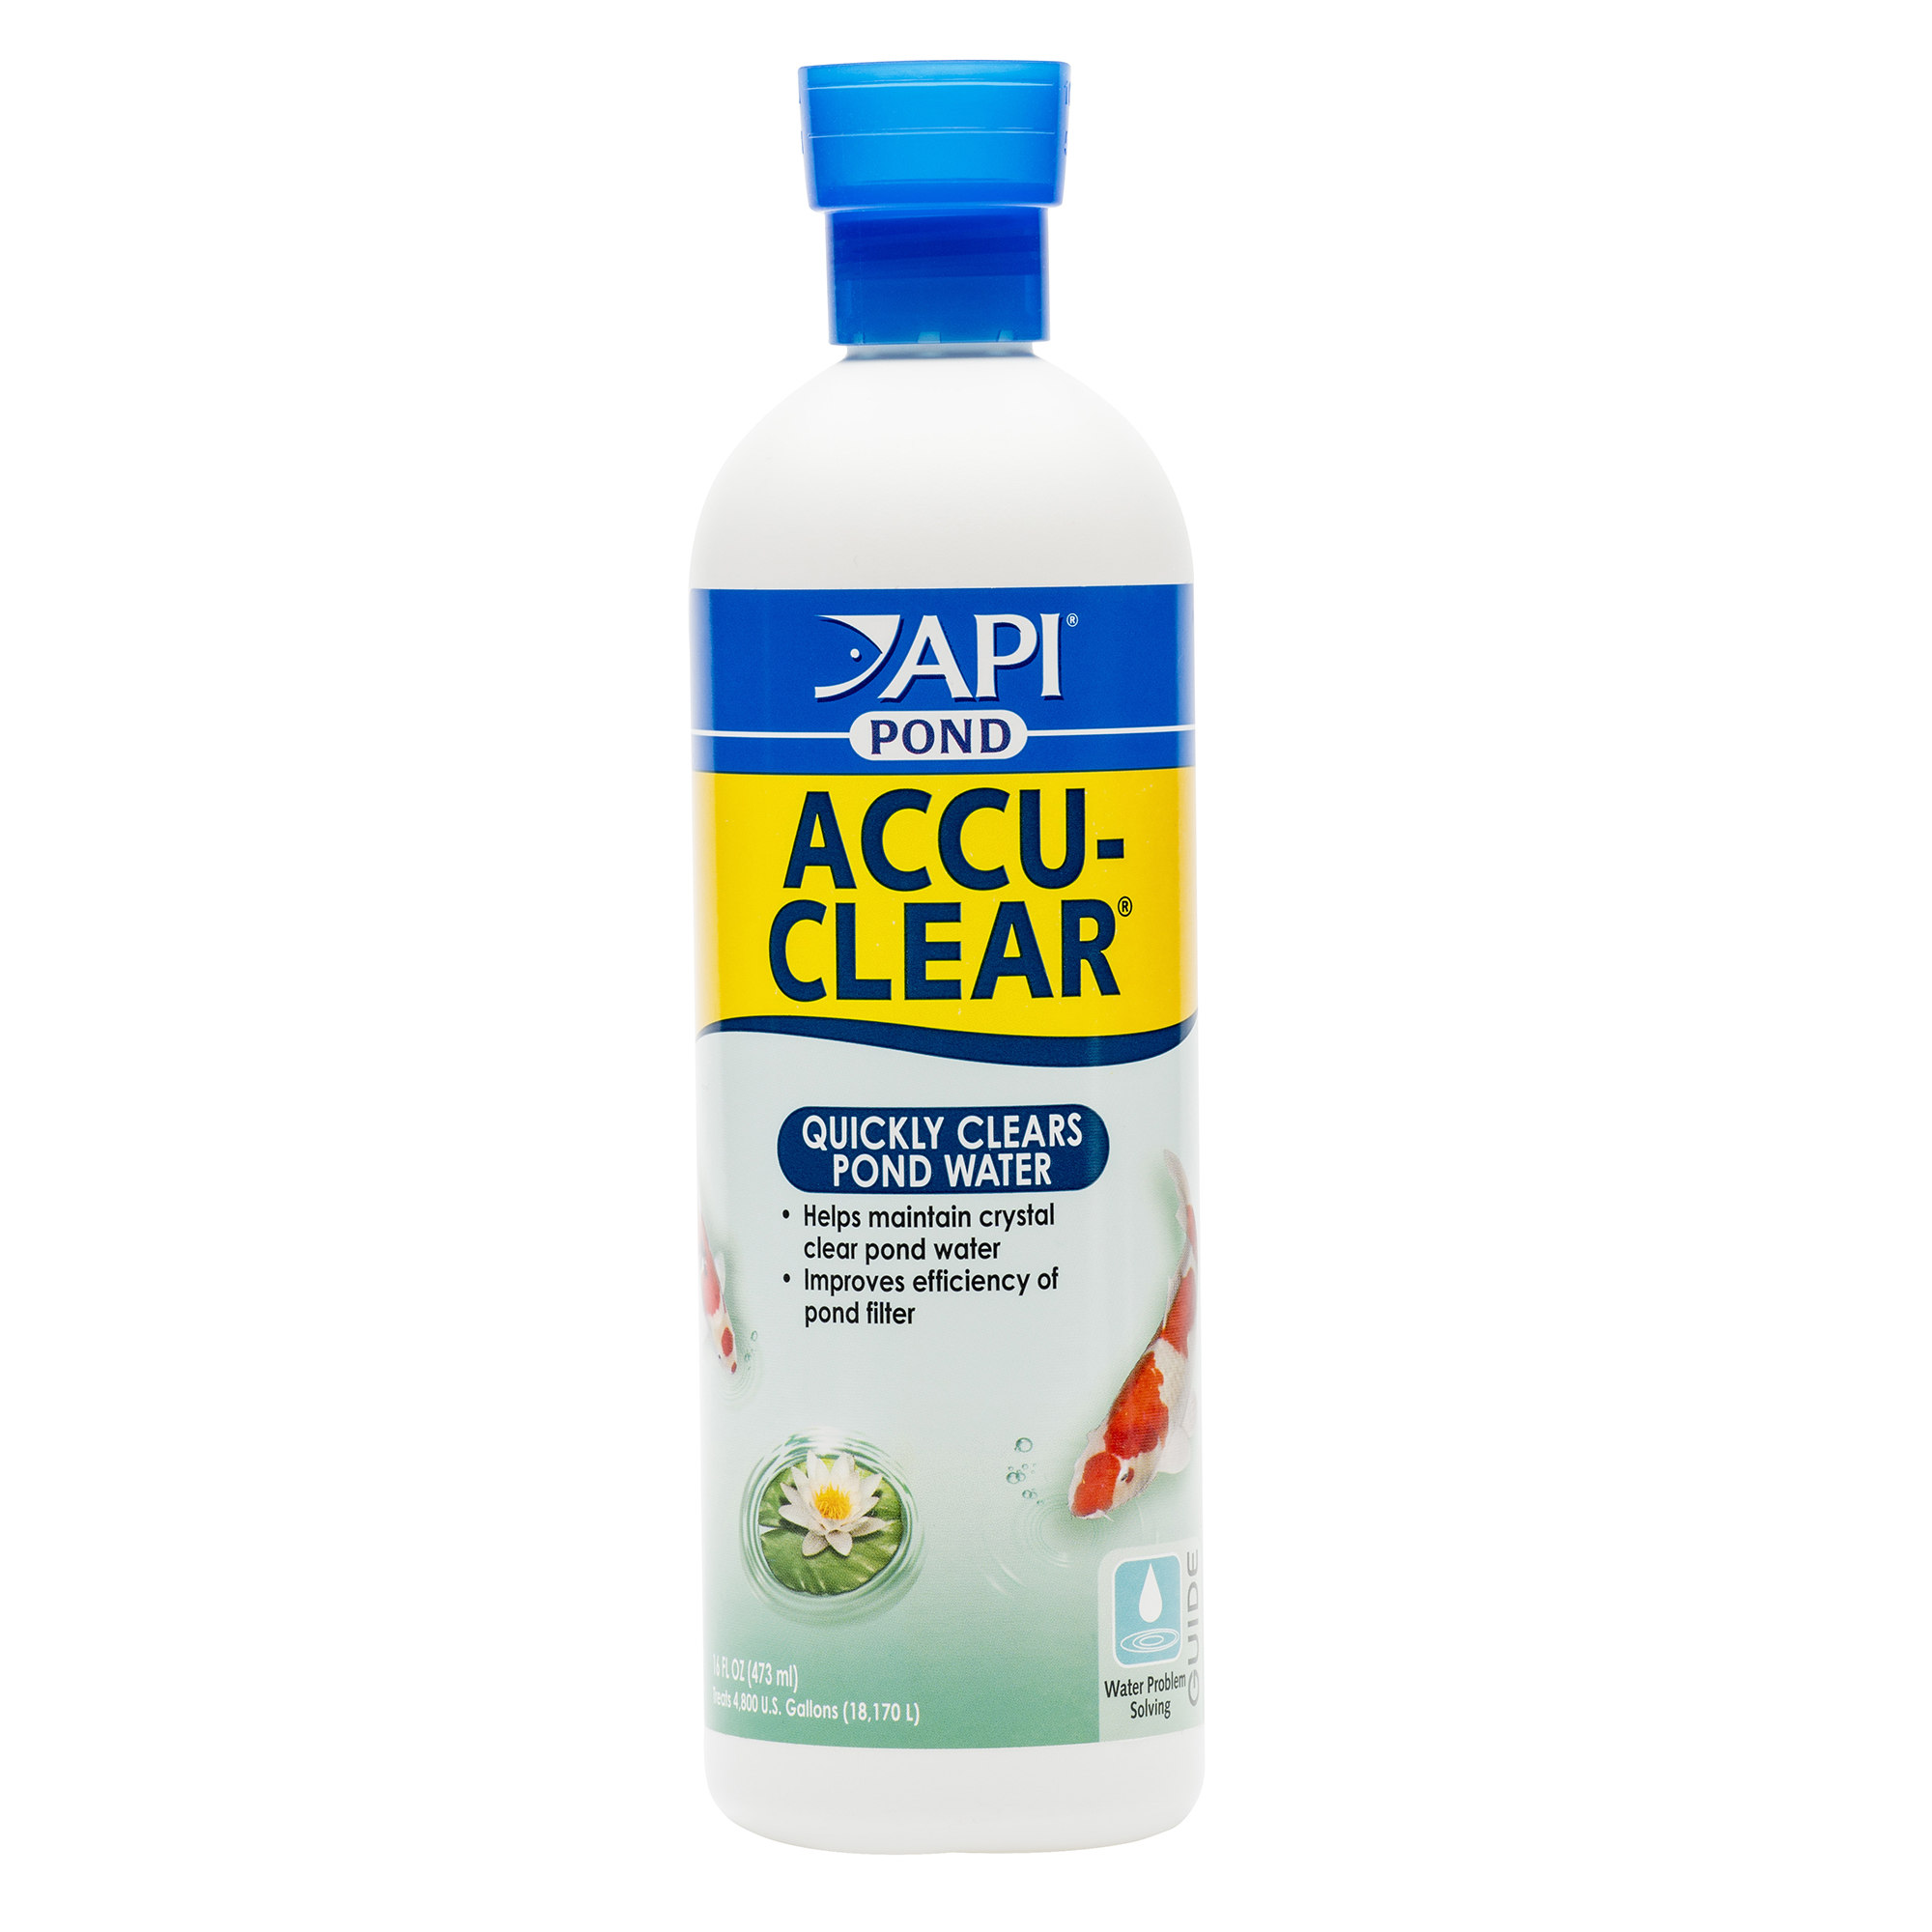 API POND ACCU-CLEAR